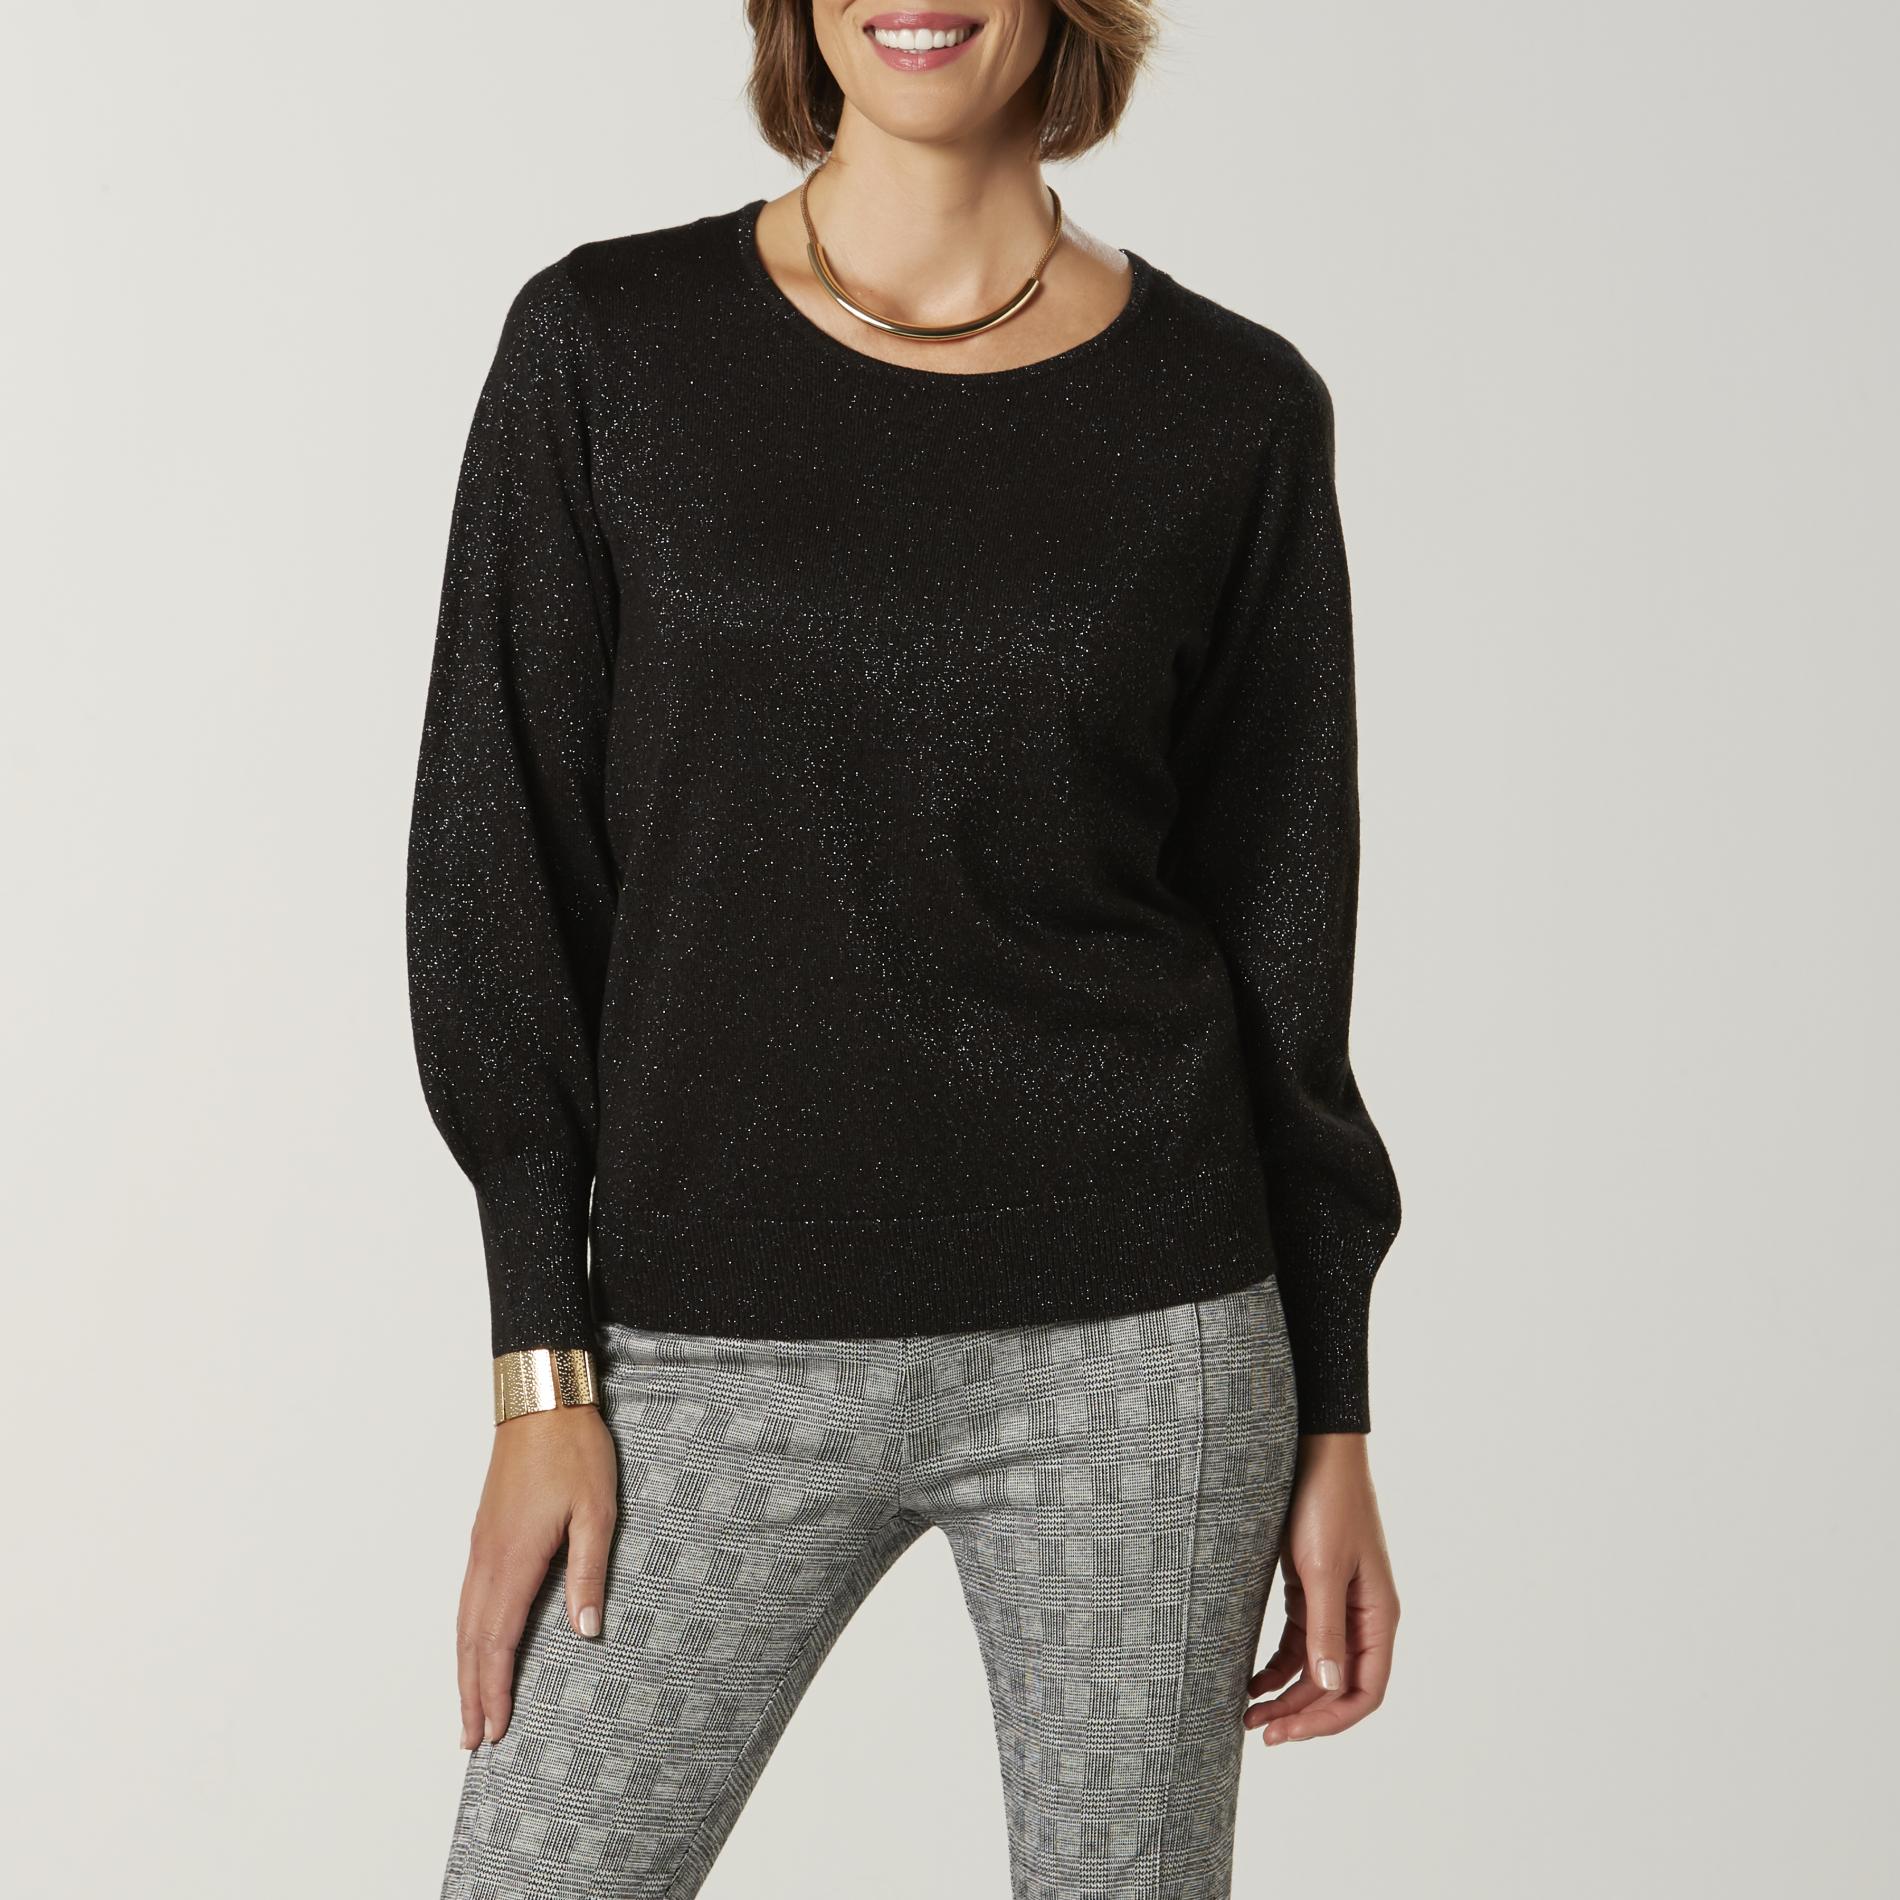 Jaclyn Smith Women's Puff-Sleeve Sweater